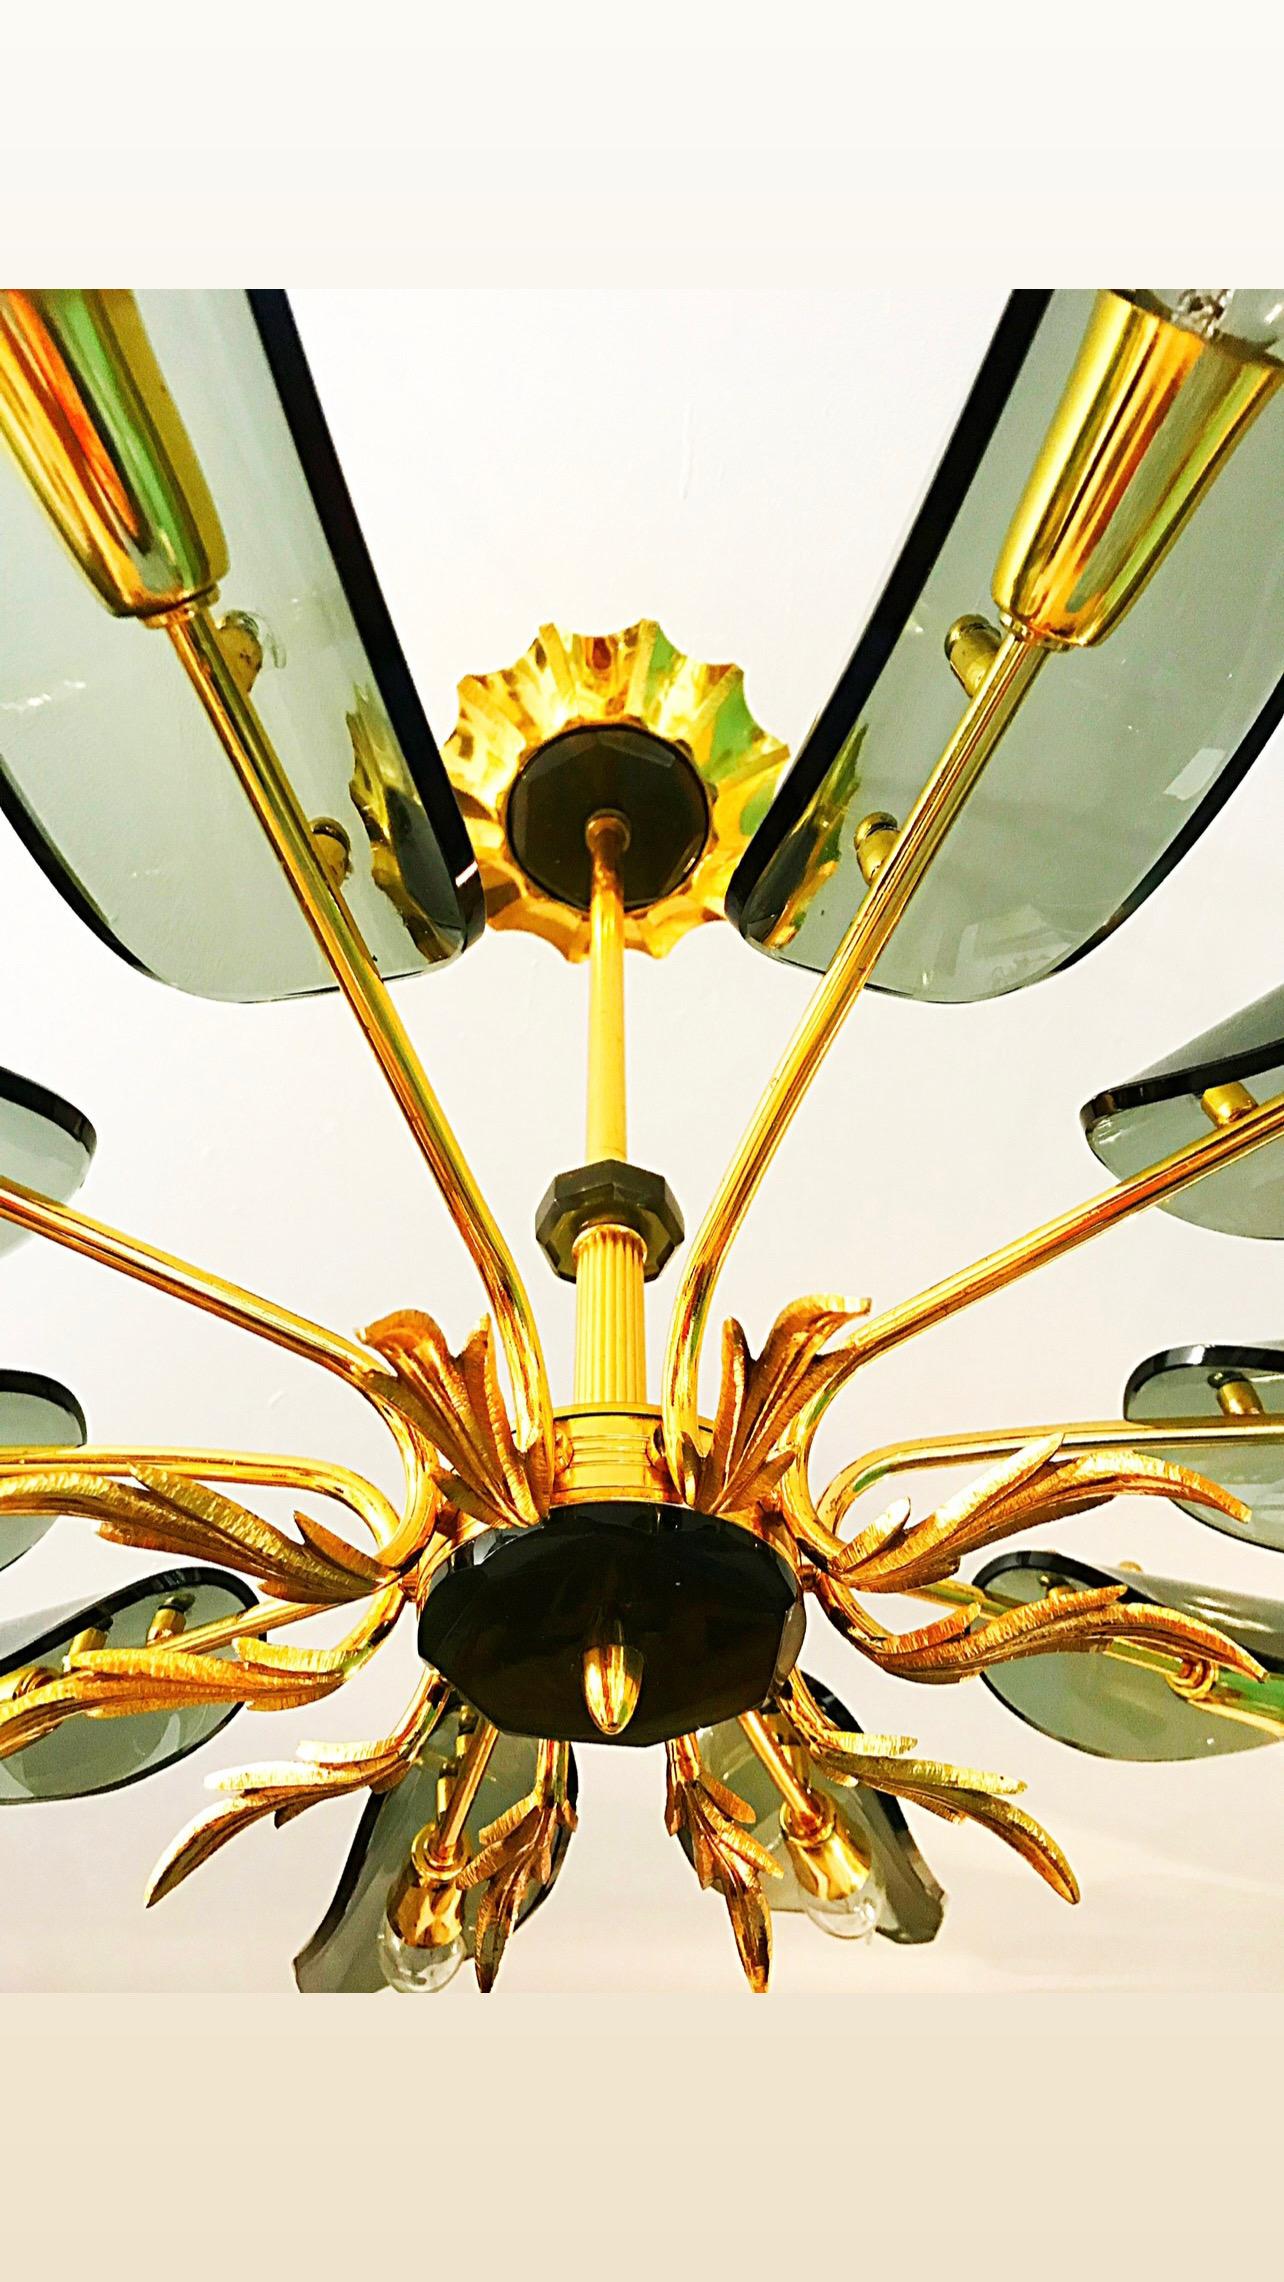 Superbe lustre en verre surdimensionné de 103 cm avec structure en or doré. Le design et la qualité du verre font de cette pièce le meilleur du design italien.

Ce verre d'art présente le design exclusif d'un designer italien des années 1960/70. Ce